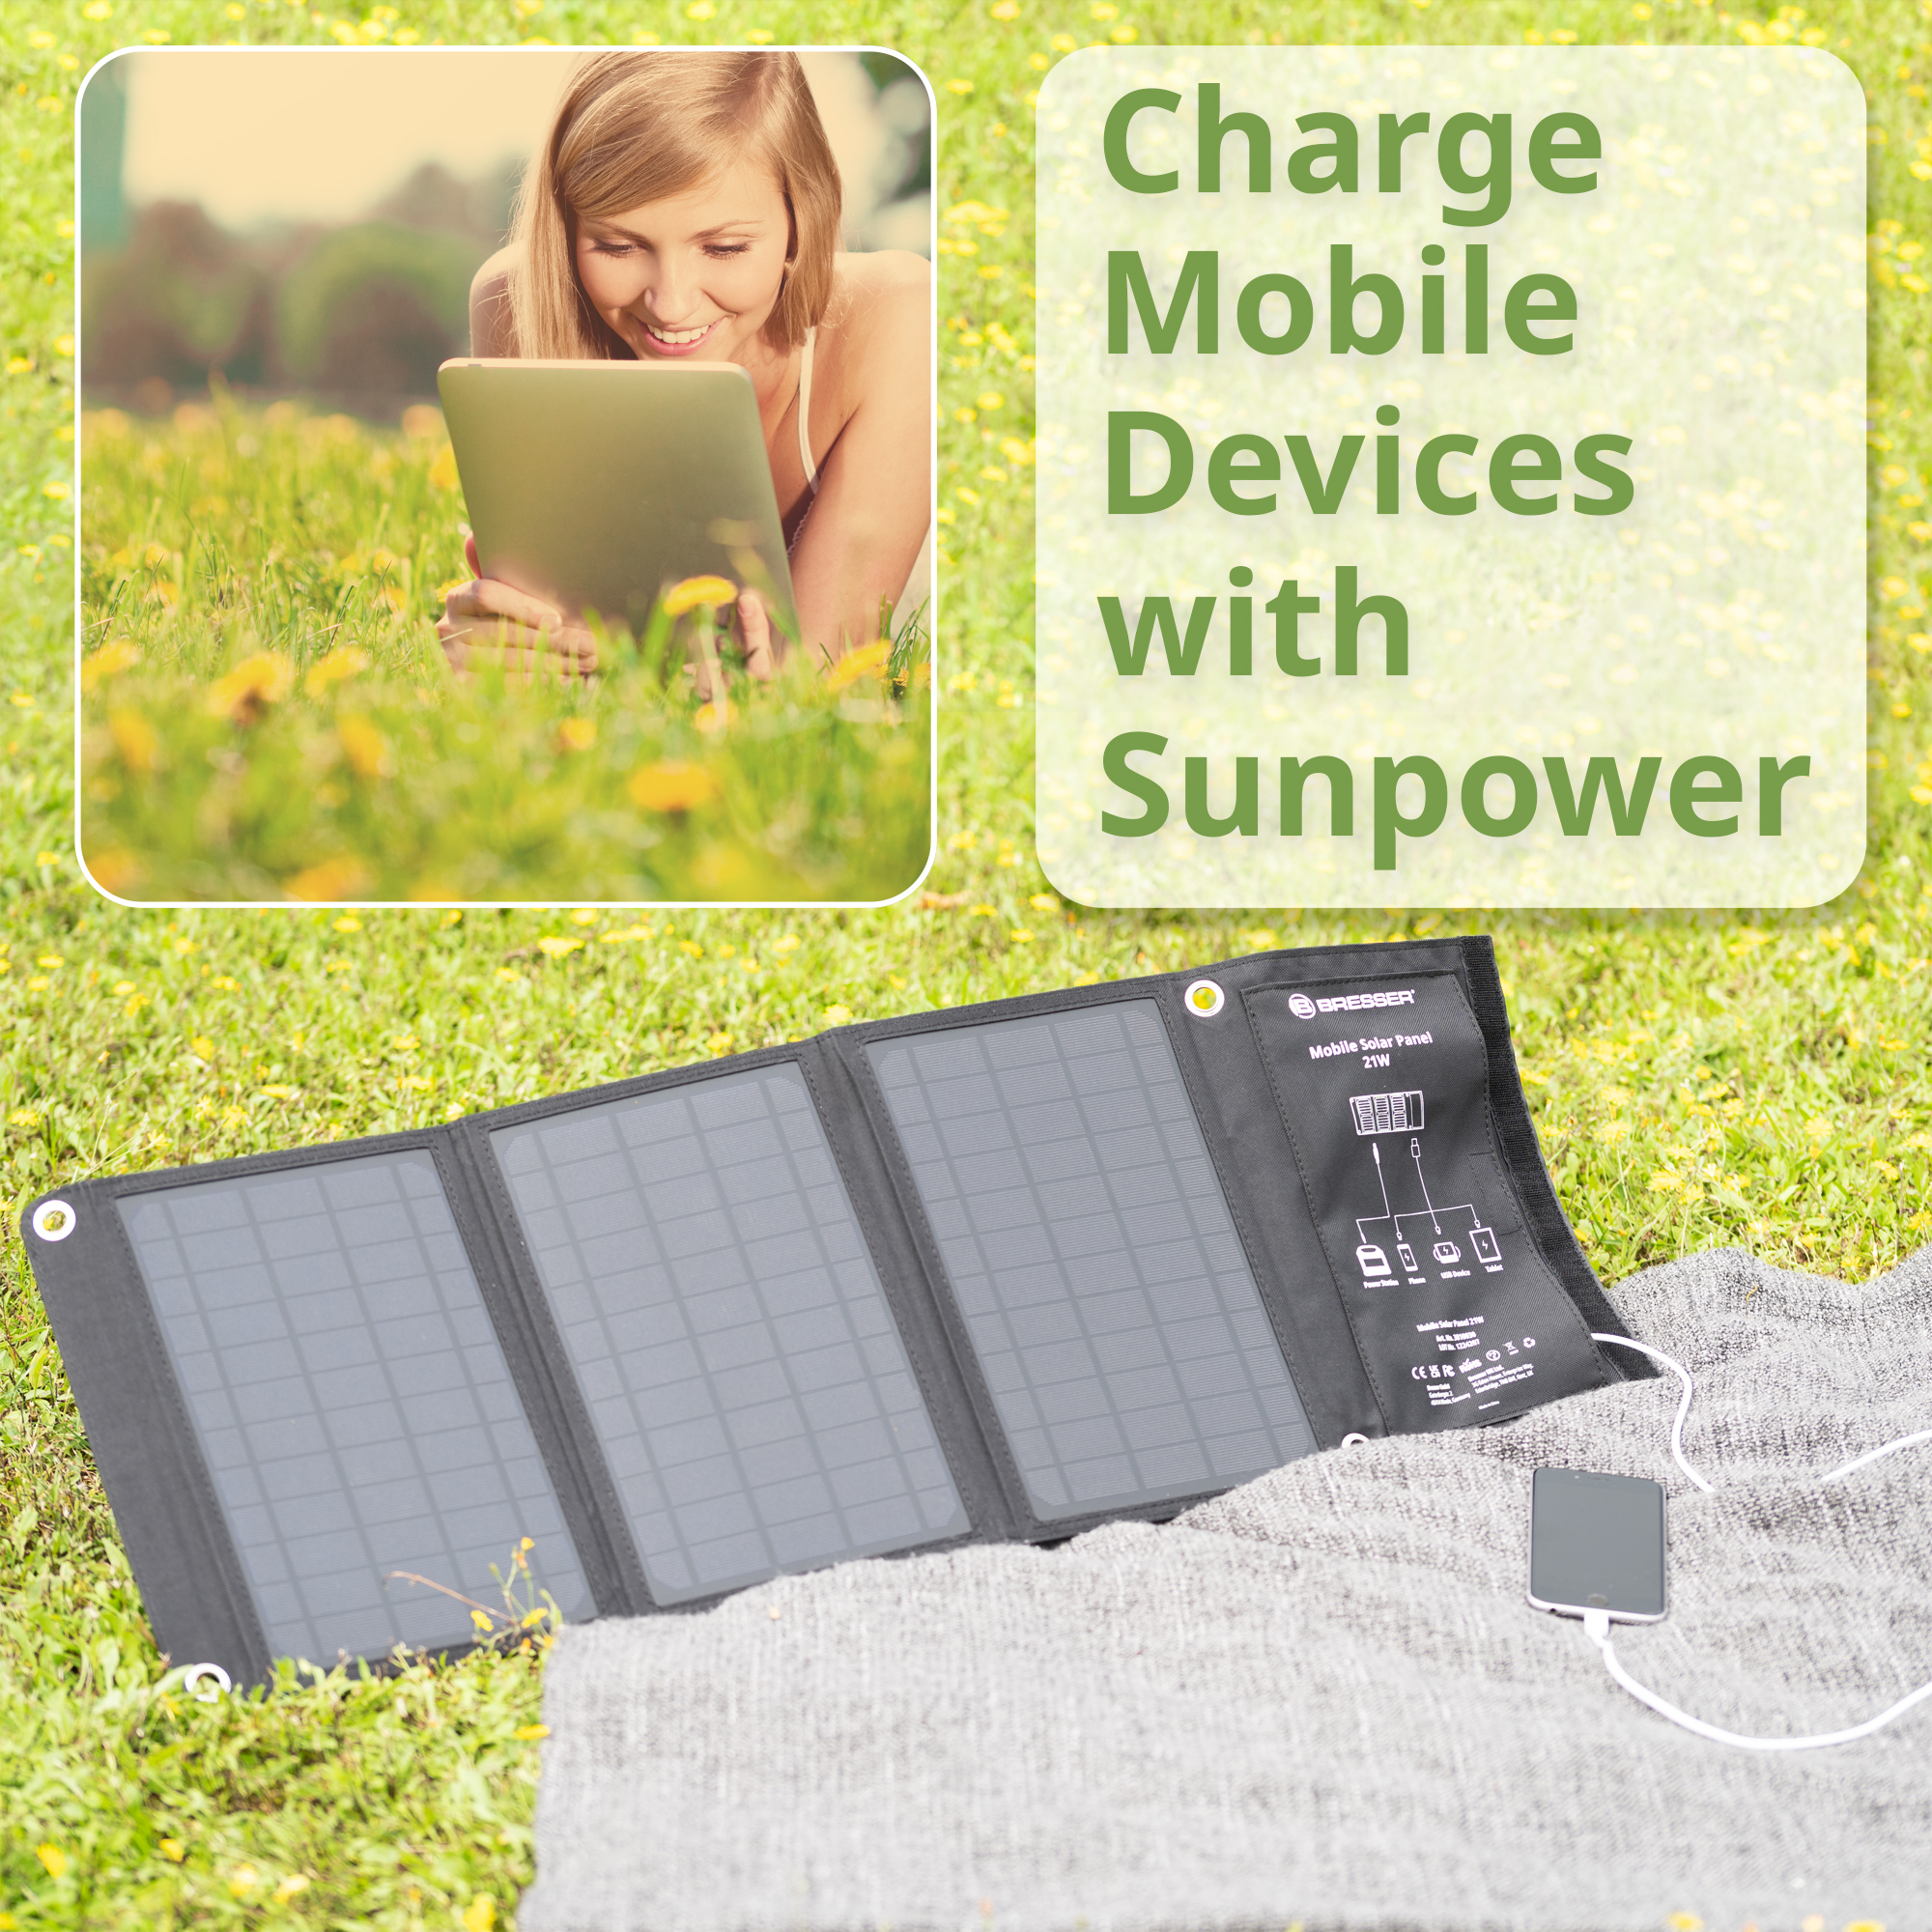 Cargador solar móvil BRESSER de 21 vatios con salida USB y DC